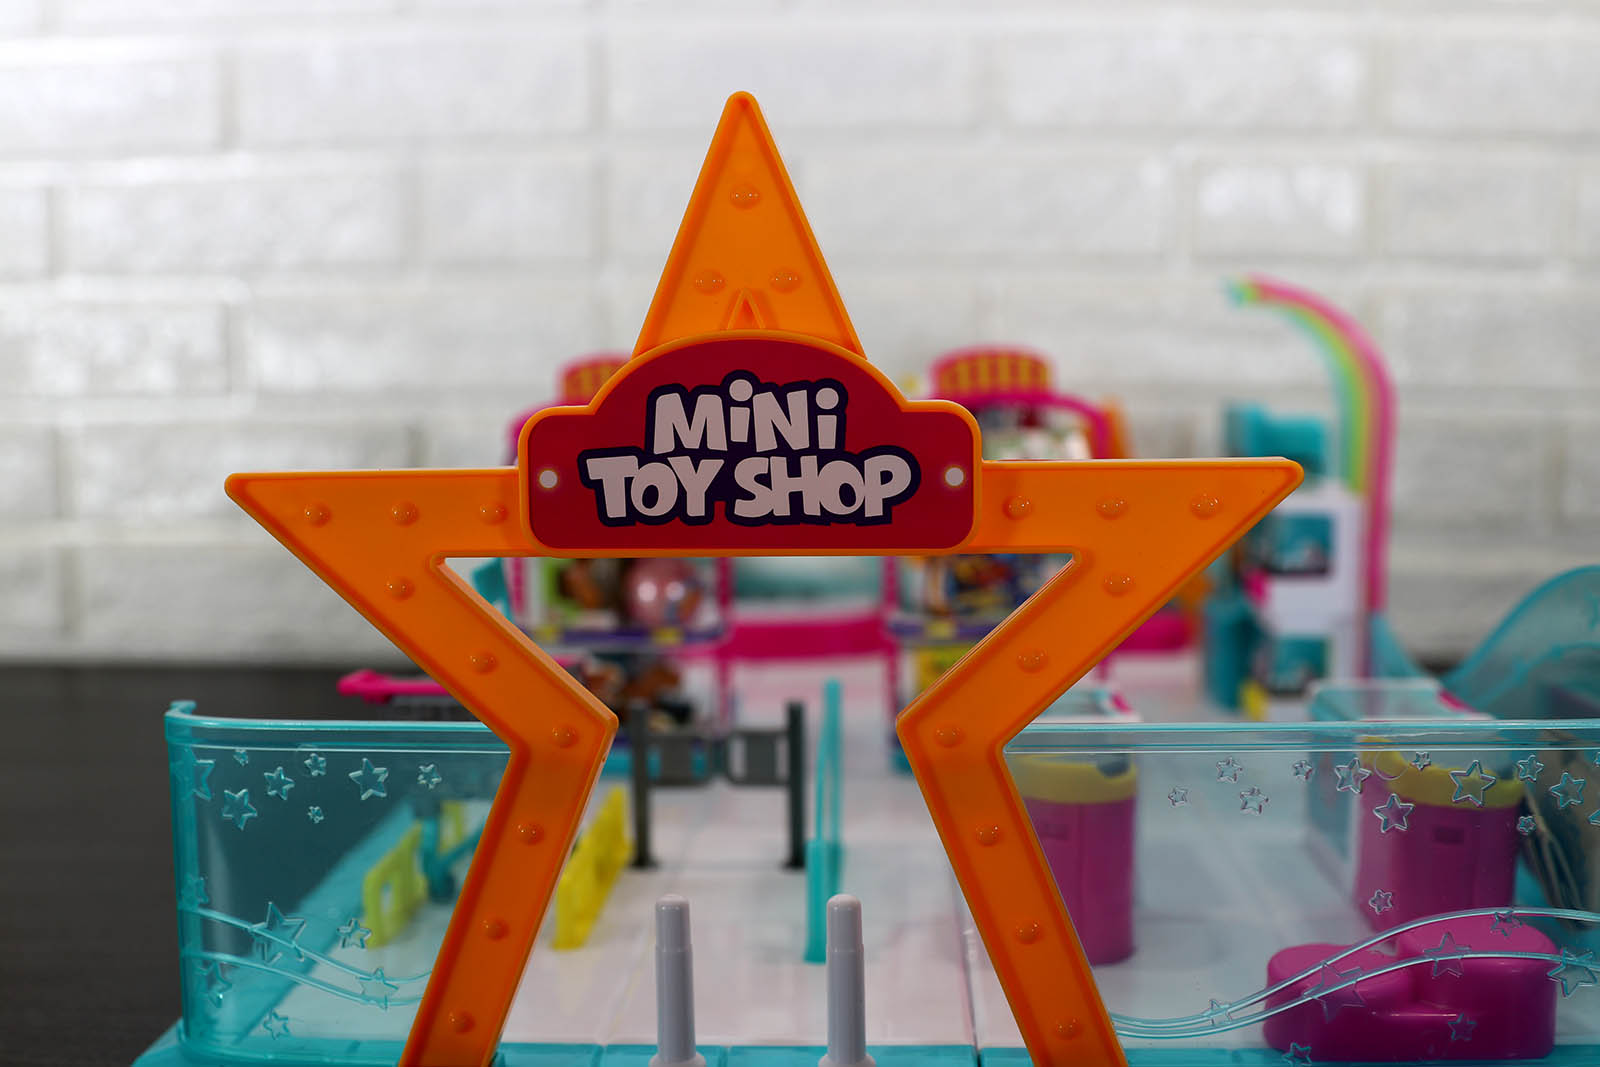 Zuru 5 Surprise Toy Mini Brands - Toy Shop Playset